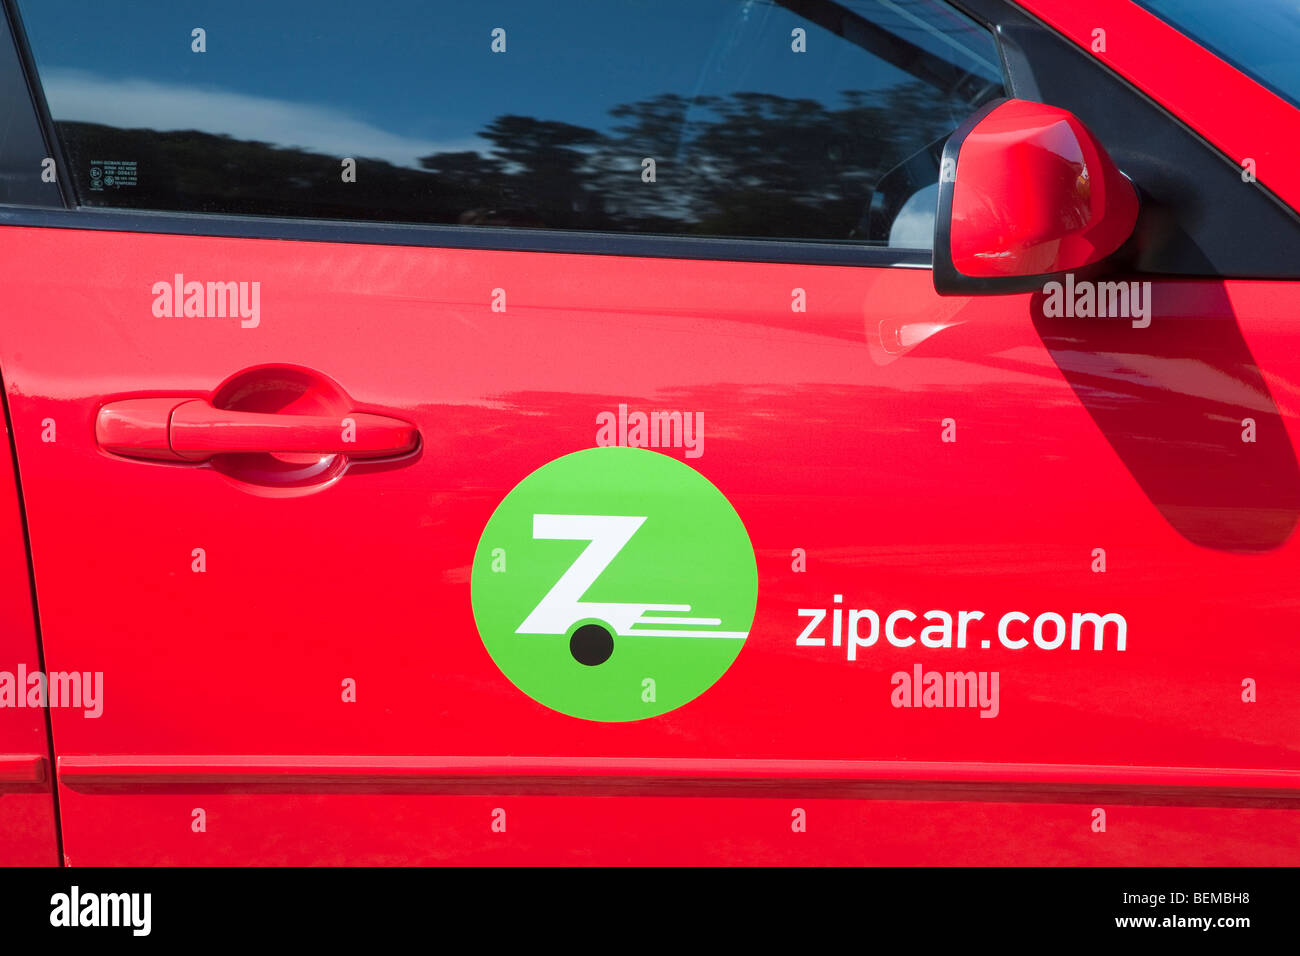 zipcar sign up